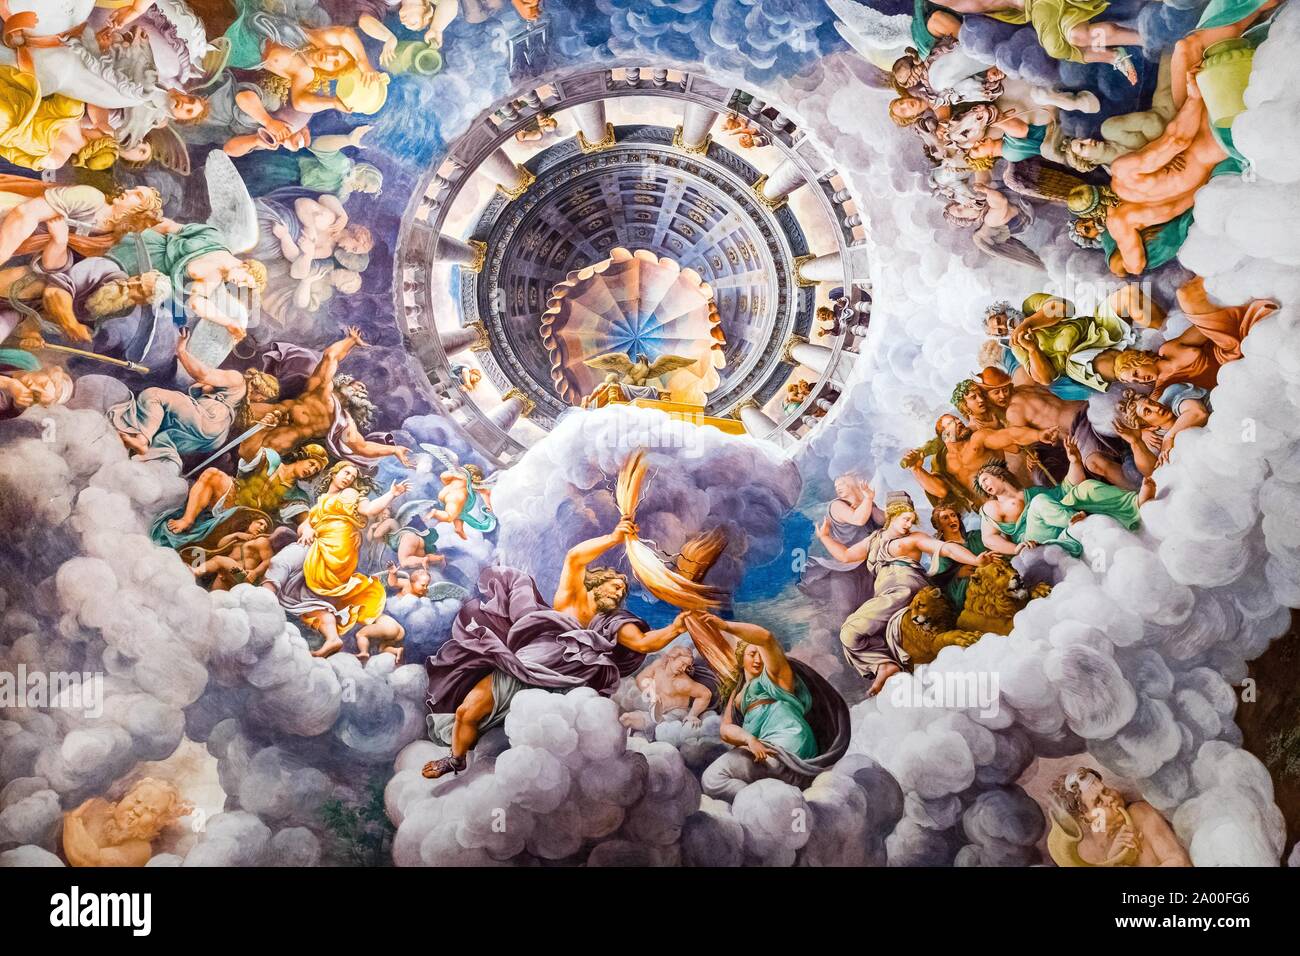 Lance Jupiter la foudre, bataille des dieux sur l'Olympe contre les géants sur la terre, l'illusion fresque de Giulio Romano, Sala dei Giganti, plaisir Banque D'Images